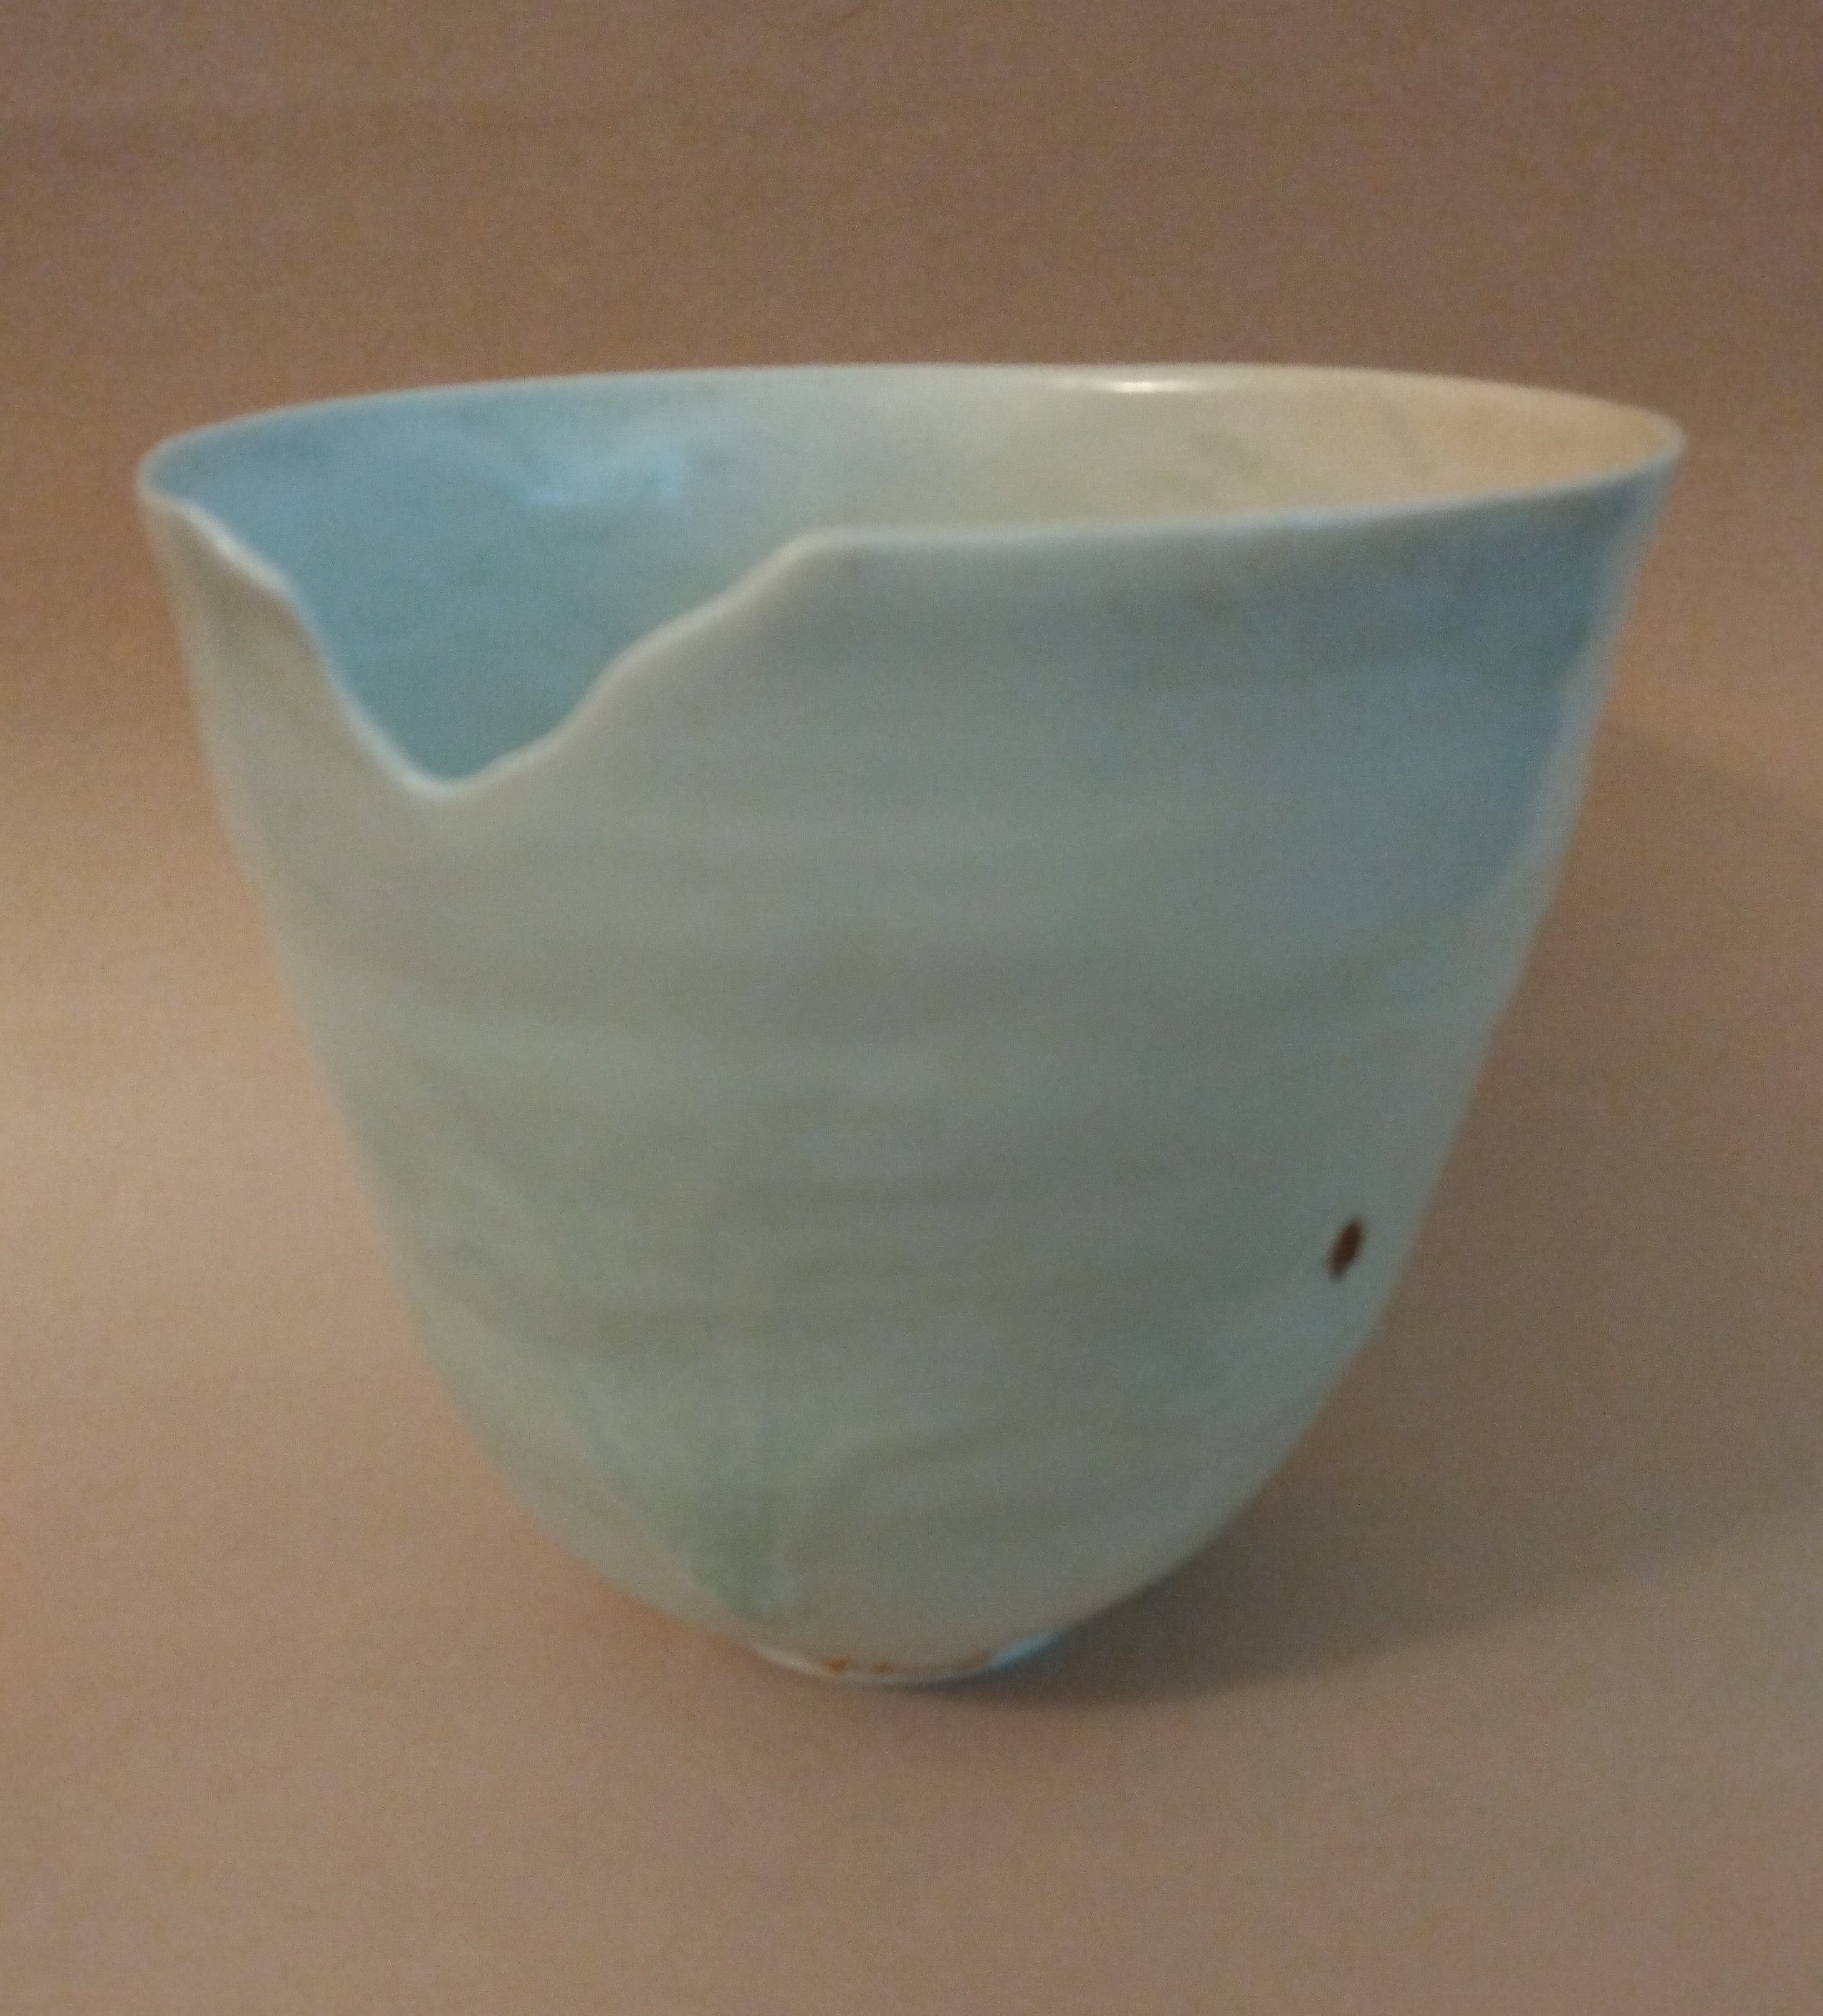 Tall Bowl/Vase with Notched Rim, White Shino Glaze, by Sachiko Furuya